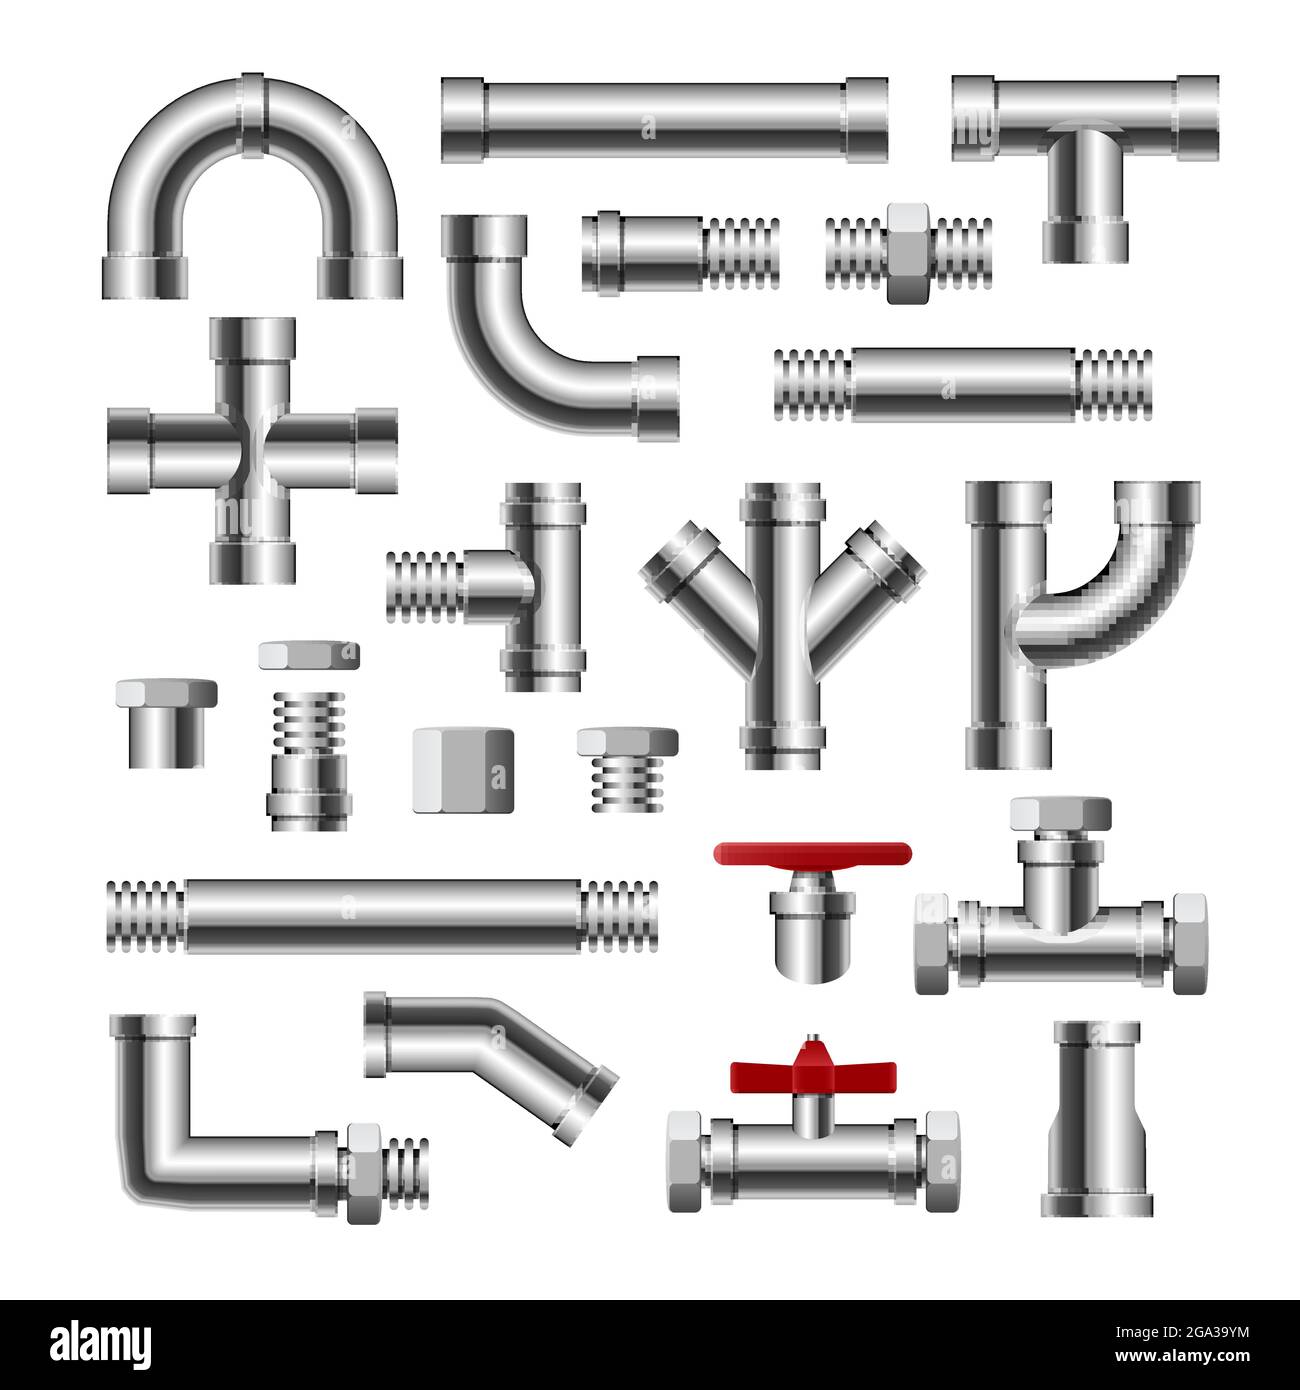 Isolierte Rohrleitung mit Wasseranschluss aus Metall. Wasserrohr Fabrik  Stahlbau Sanitär Stock-Vektorgrafik - Alamy